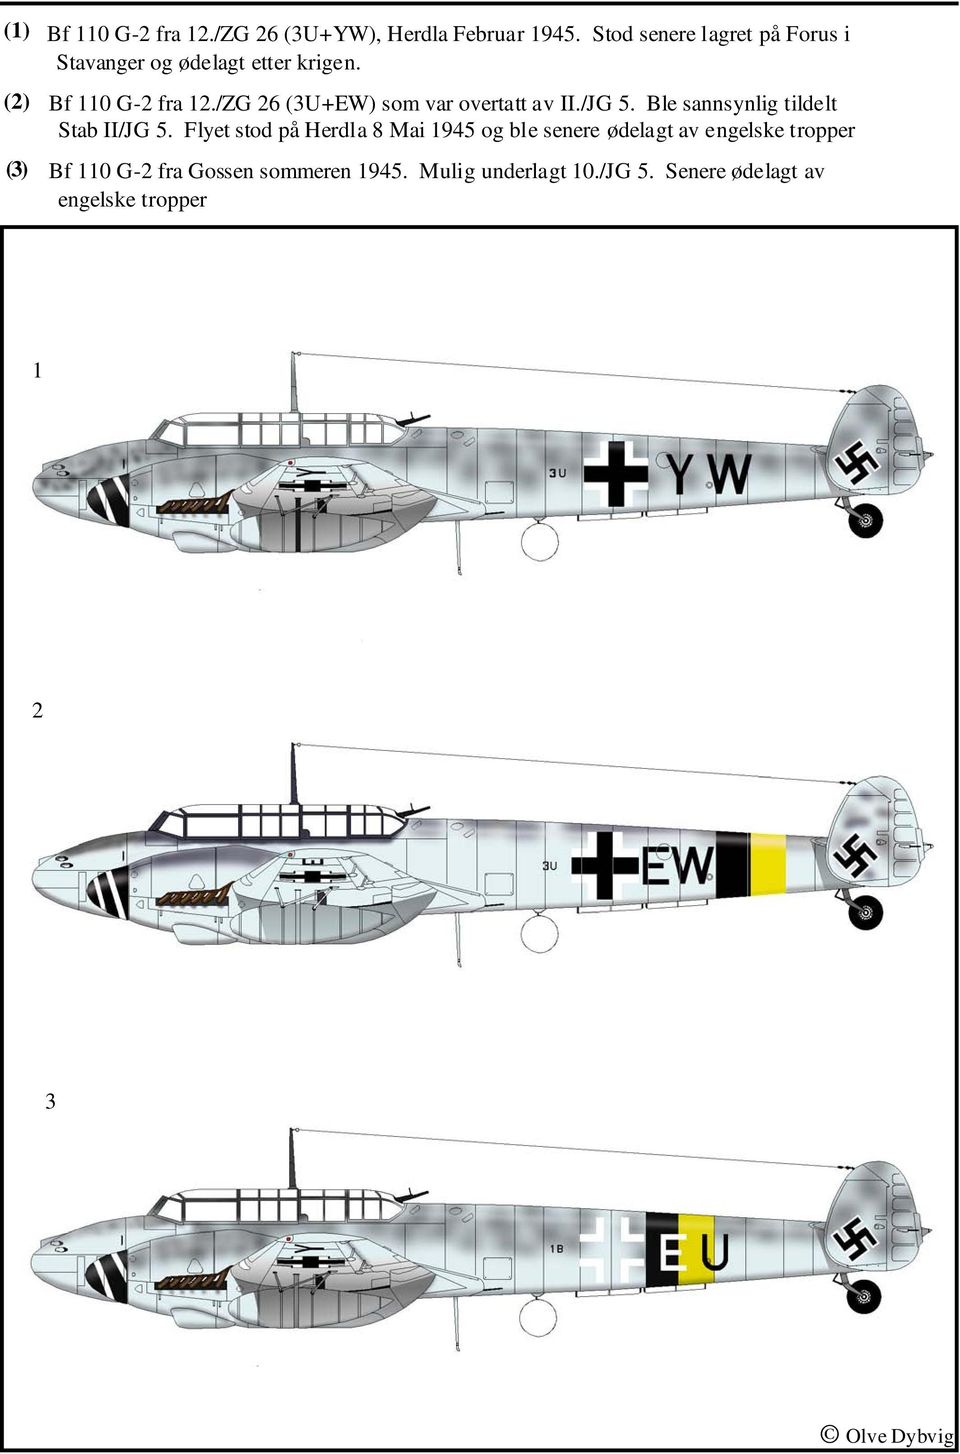 /ZG 26 (3U+EW) som var overtatt av II./JG 5. Ble sannsynlig tildelt Stab II/JG 5.